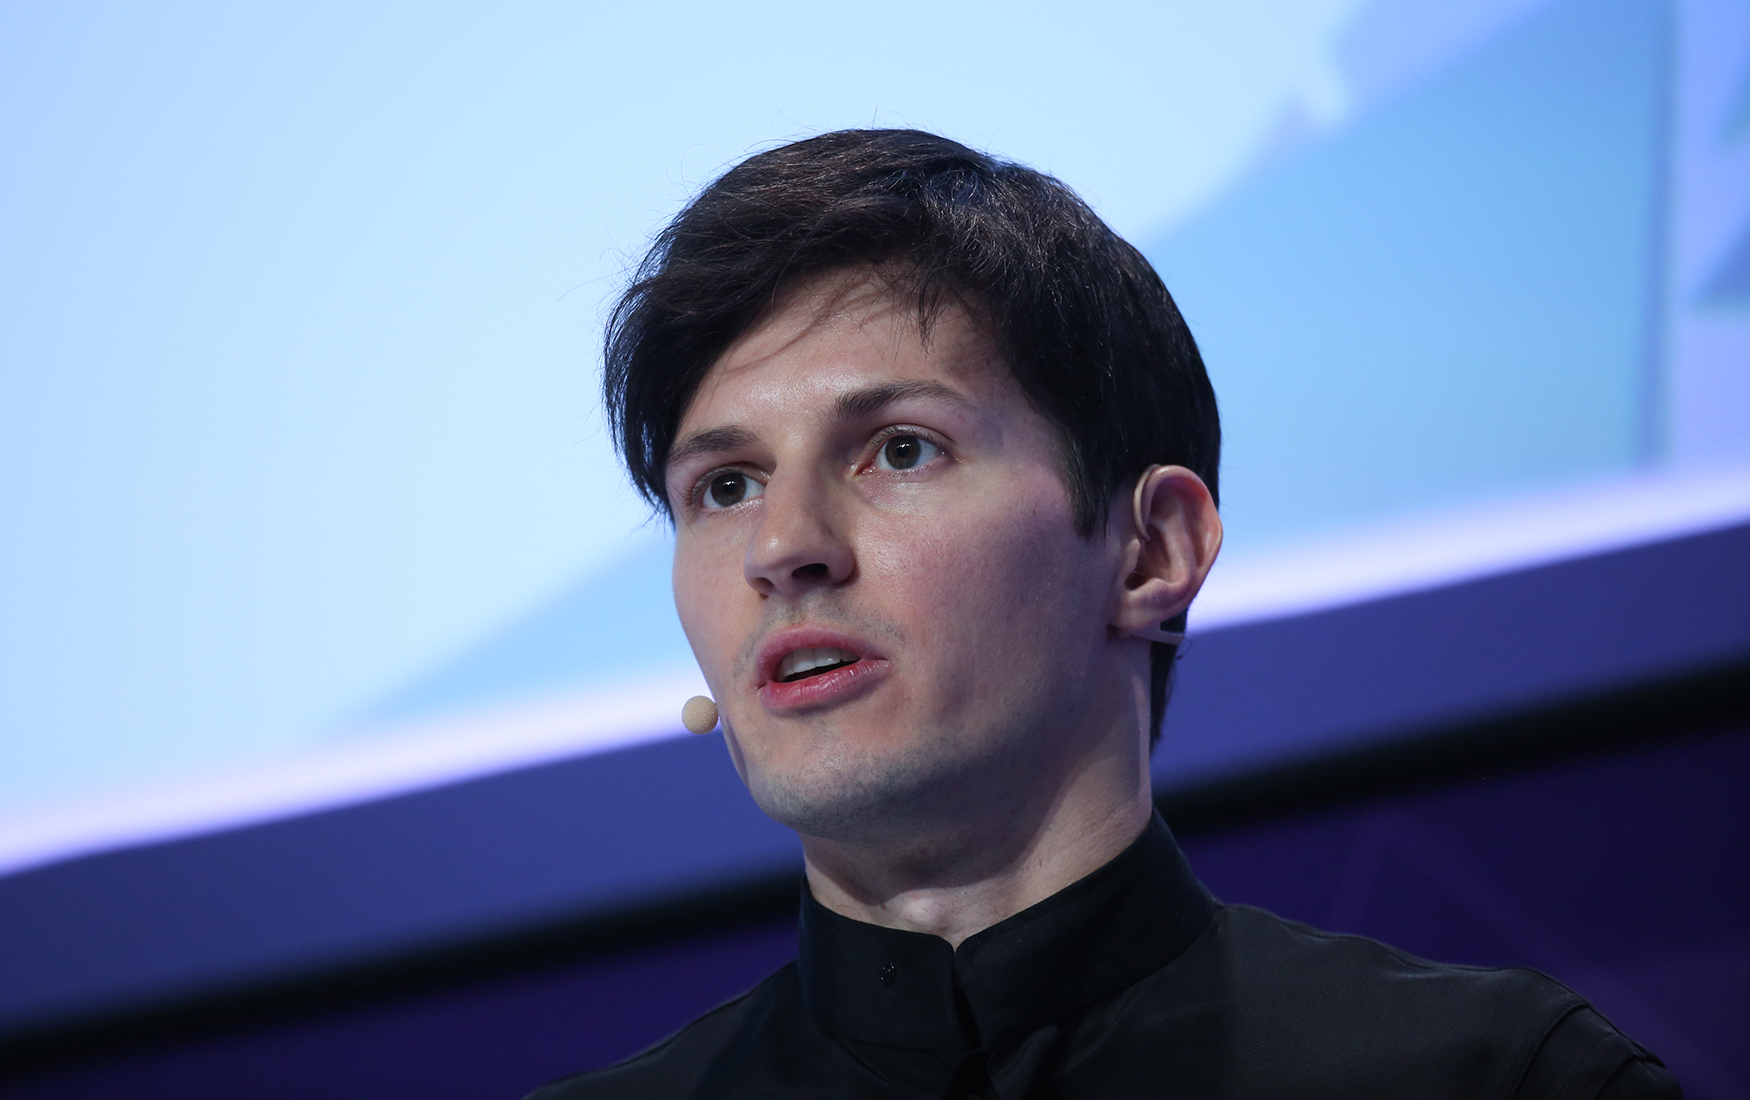 Pavel Durov skrytykował WhatsApp i zalecił usunięcie go ze smartfona